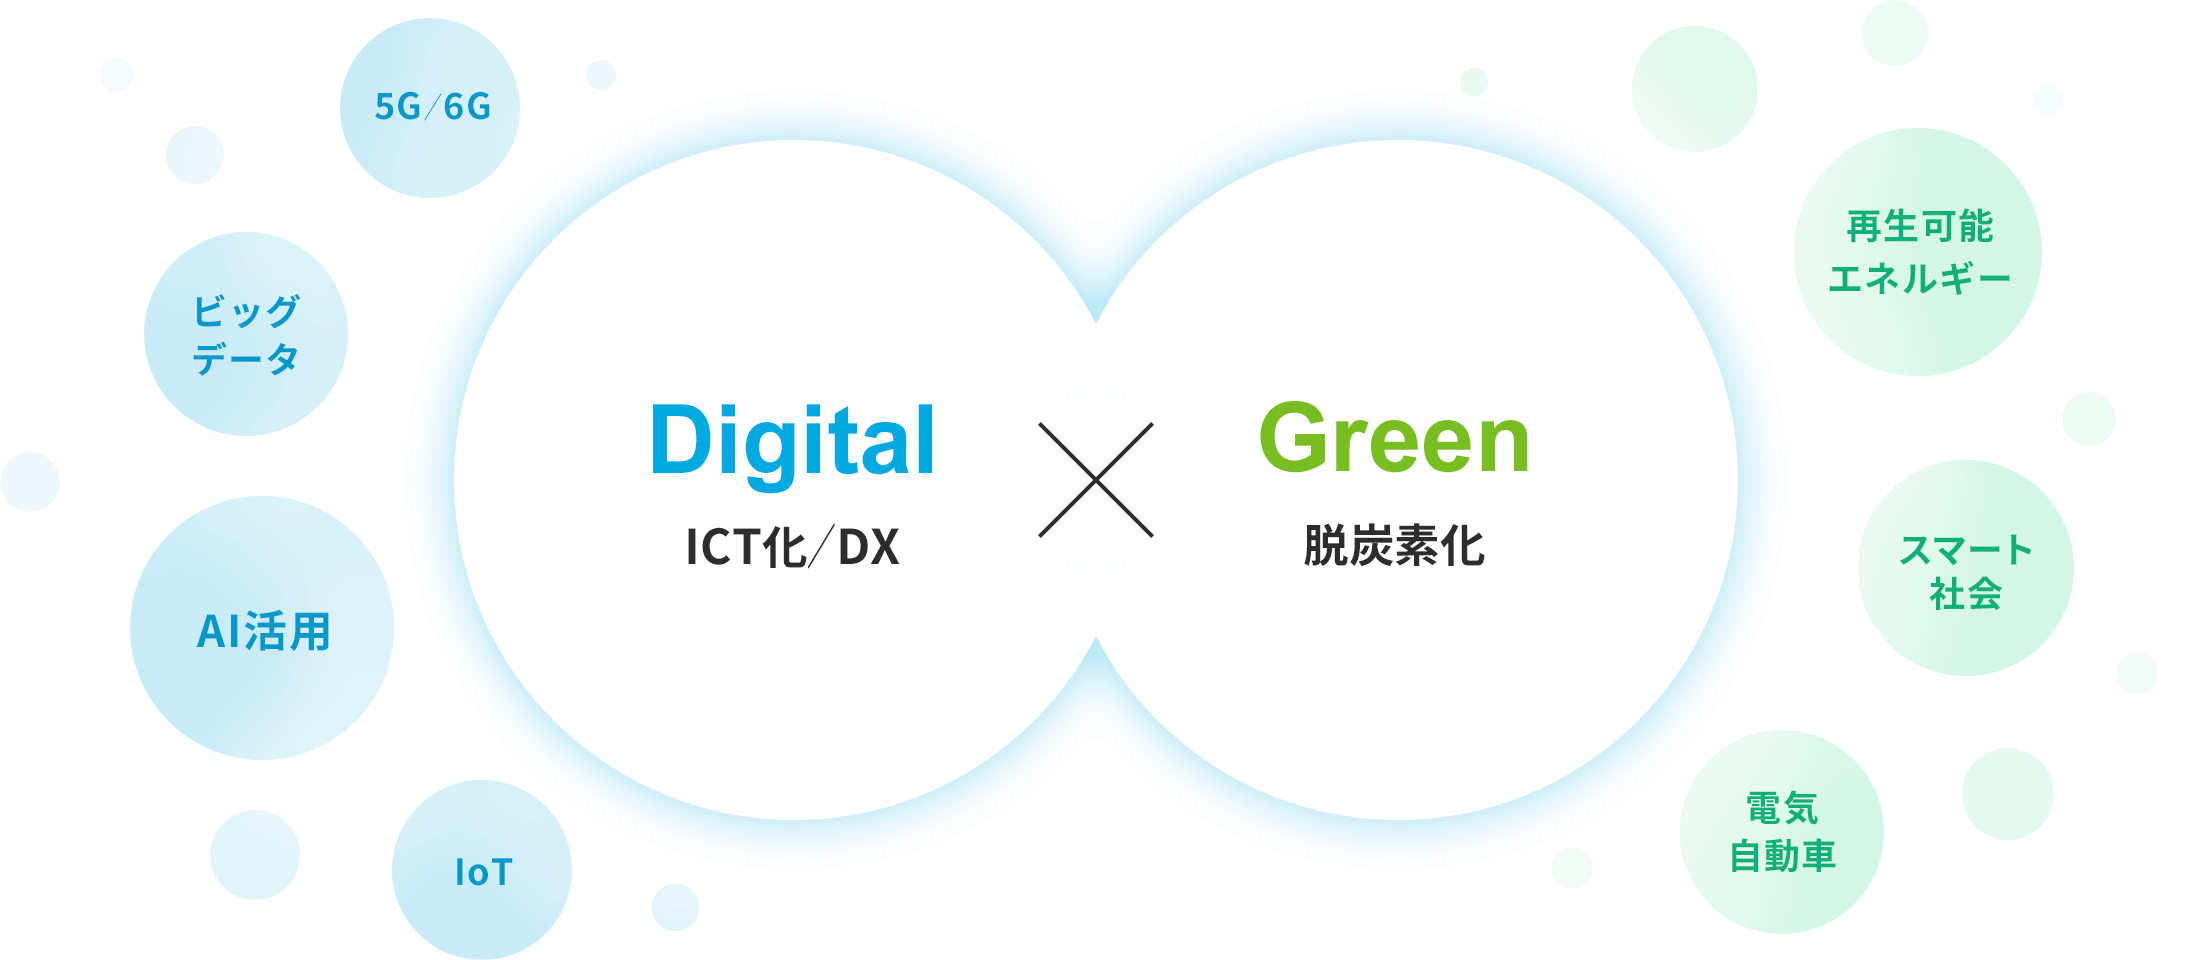 デジタル×グリーンを表す図。Digitalとは、ICT化/DX。たとえば、5G/6G、ビッグデータ、AI活用、IoT。Greenとは、脱炭素化。たとえば、再生可能エネルギー、スマート社会、電気自動車。